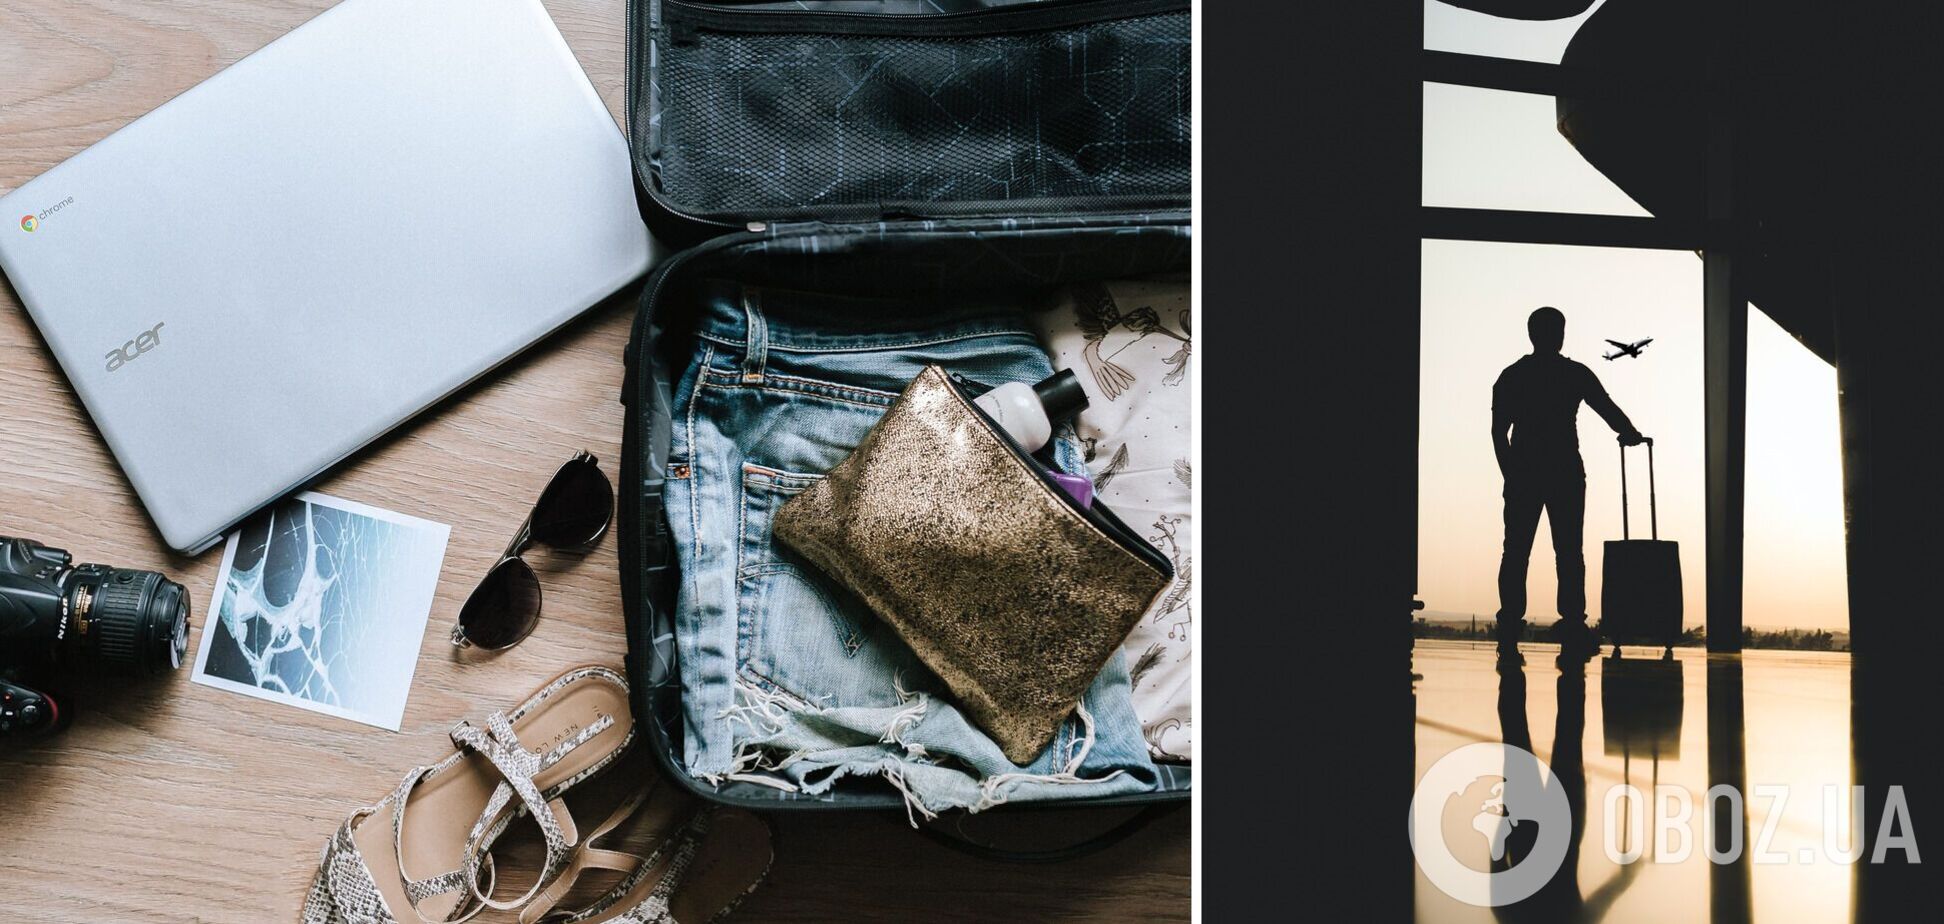 Збираємо валізу у подорож: що потрібно взяти і як нічого не забути